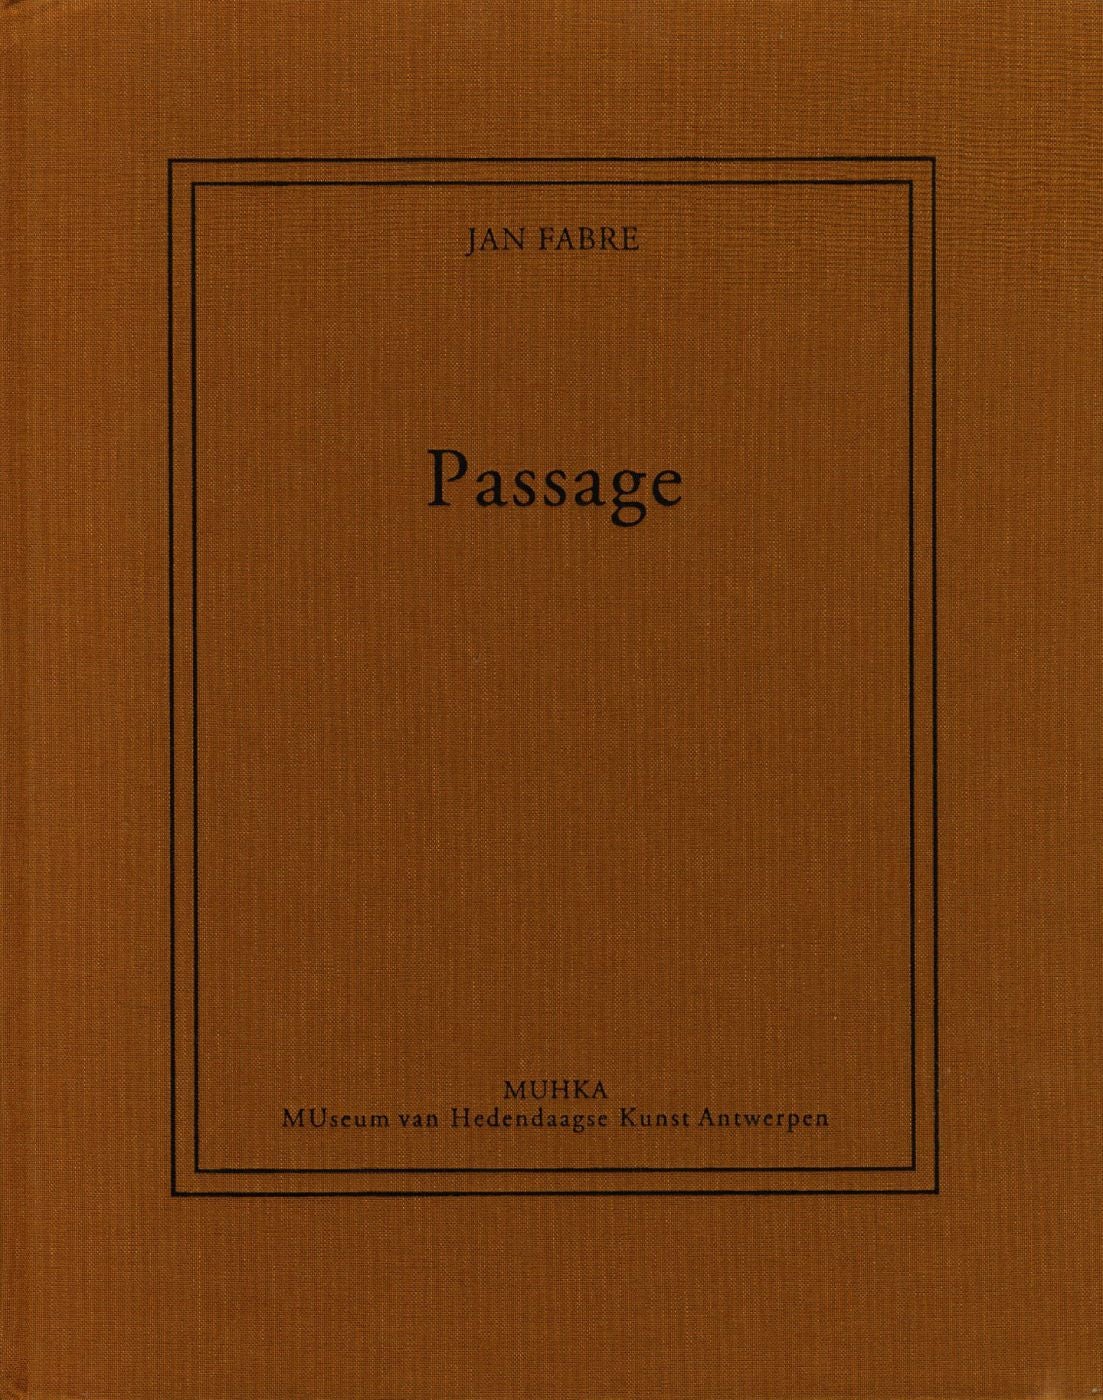 Jan Fabre: Passage